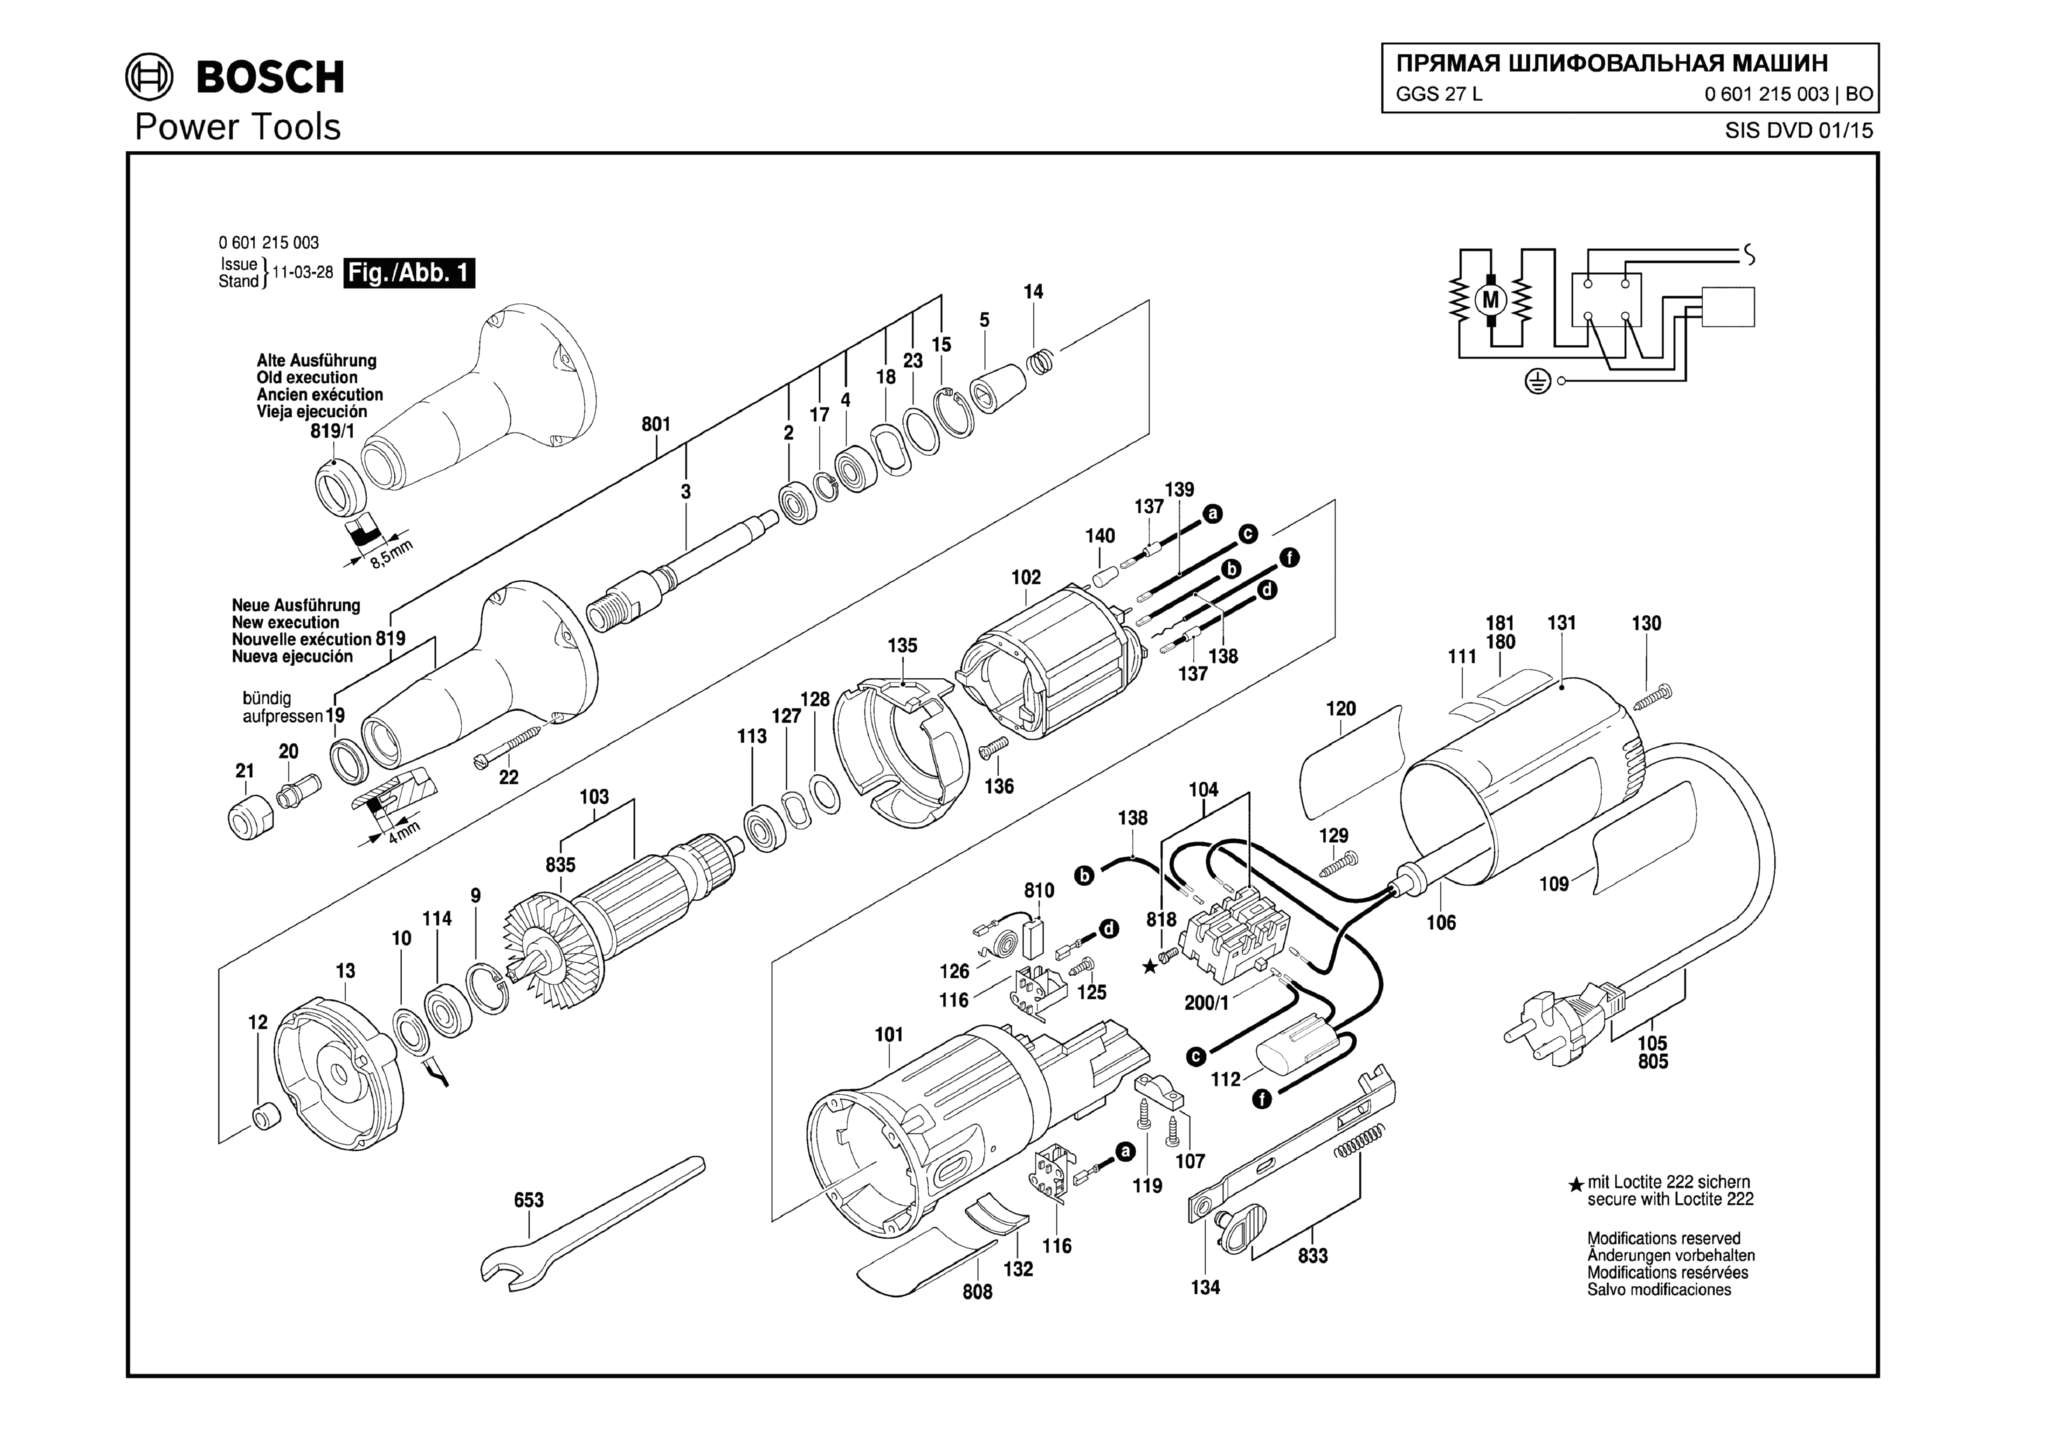 Запчасти, схема и деталировка Bosch GGS 27 L (ТИП 0601215003)